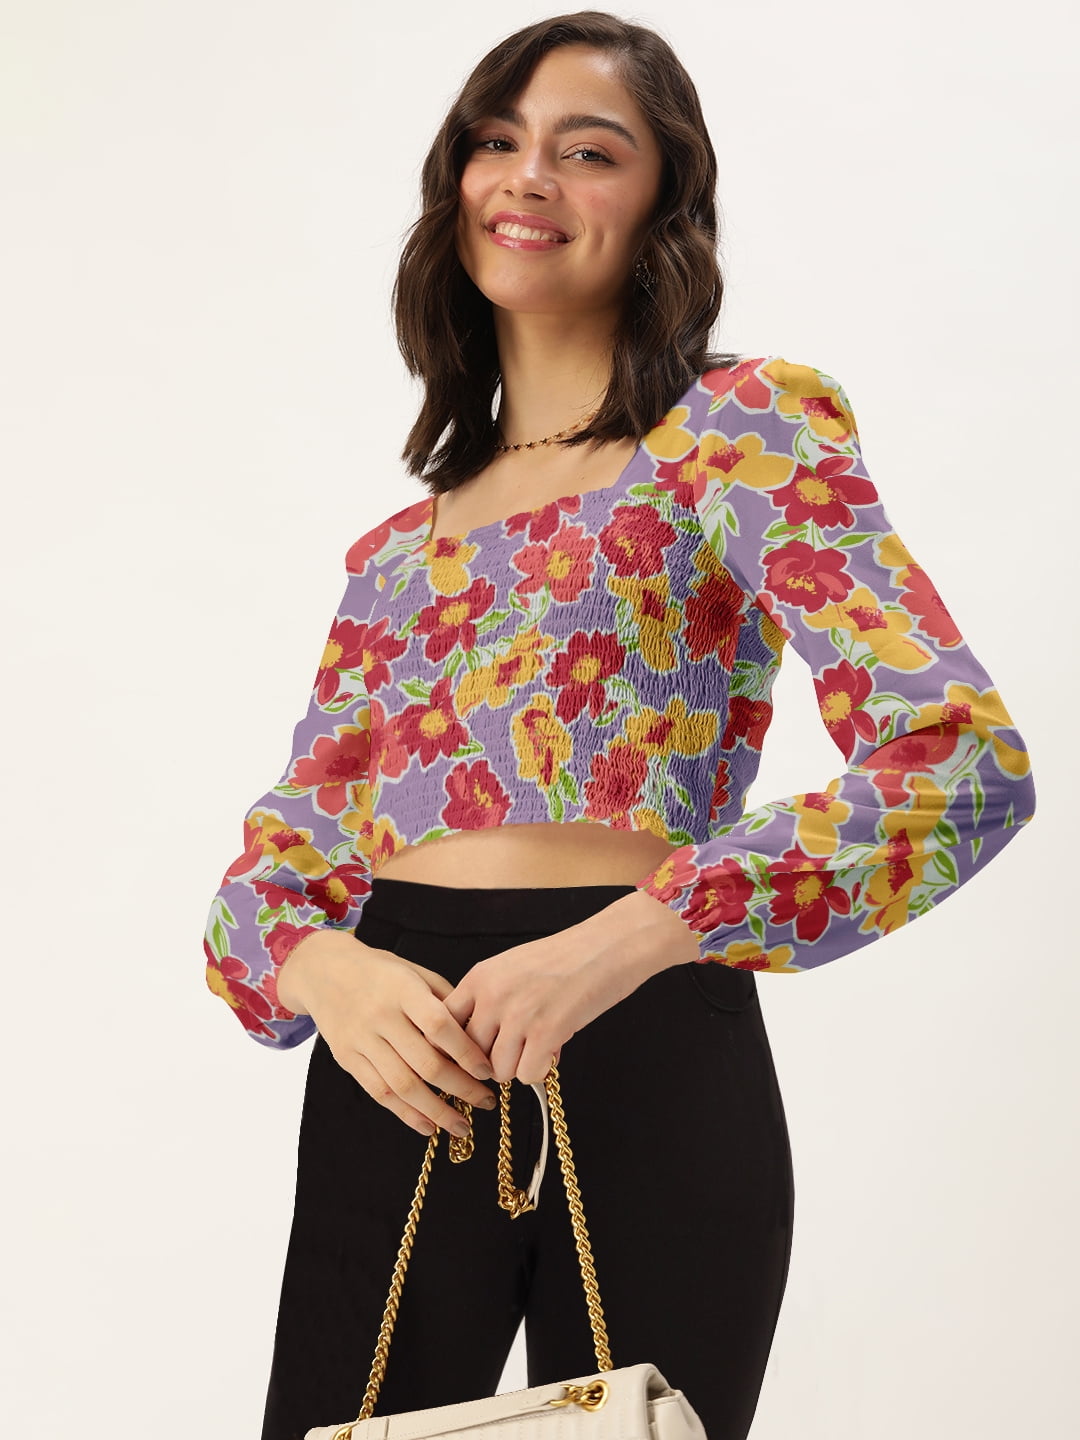 Buy online Shefab Regular Rayon Top from western wear for Women by